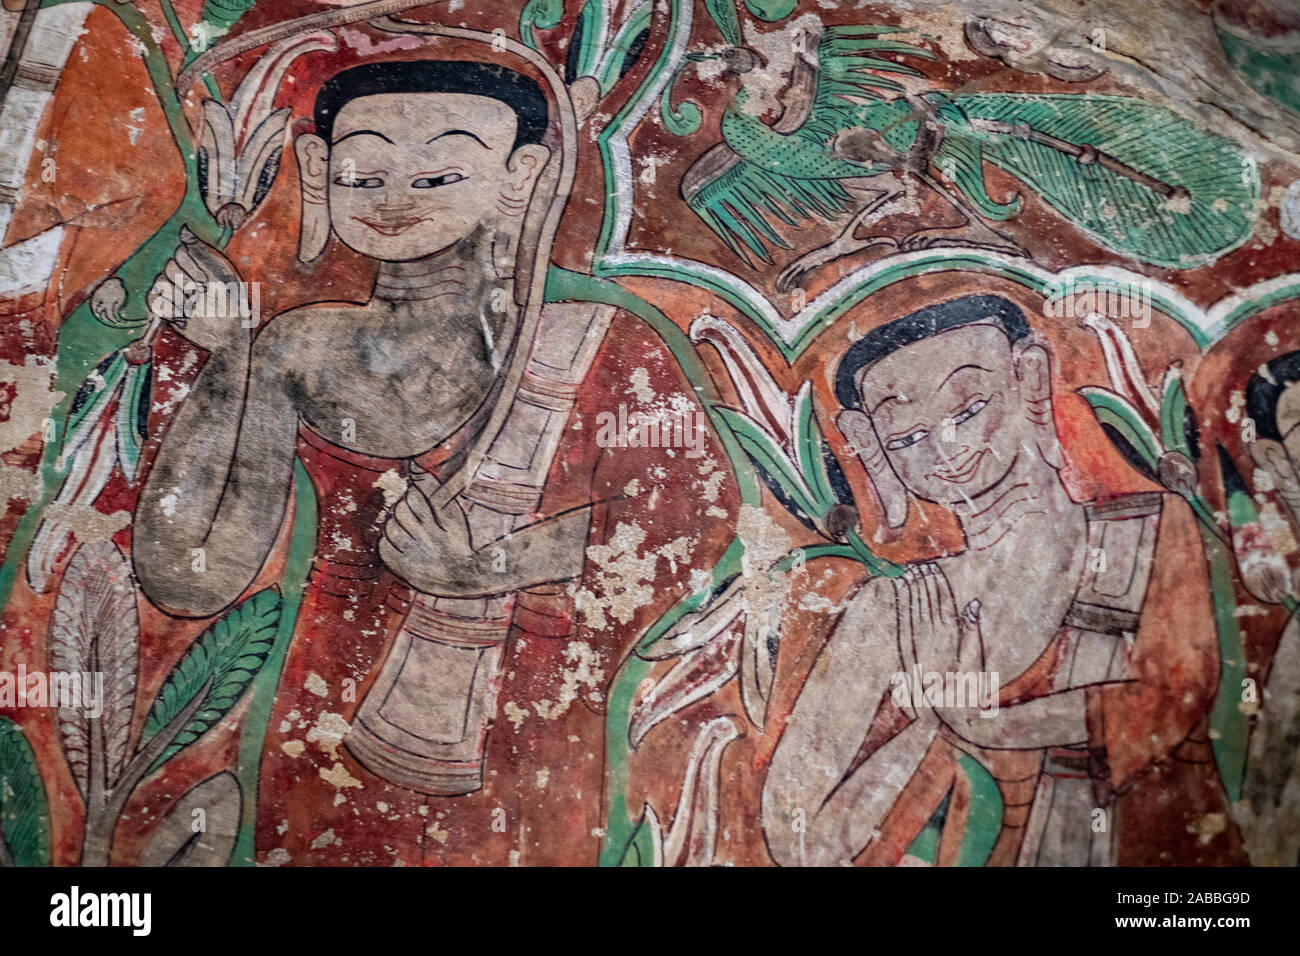 Peintures murales et religieux d'art ornant le Phowin Taung grottes situé le long de la rivière Chindwin, dans le nord-ouest de Myanmar (Birmanie) Banque D'Images